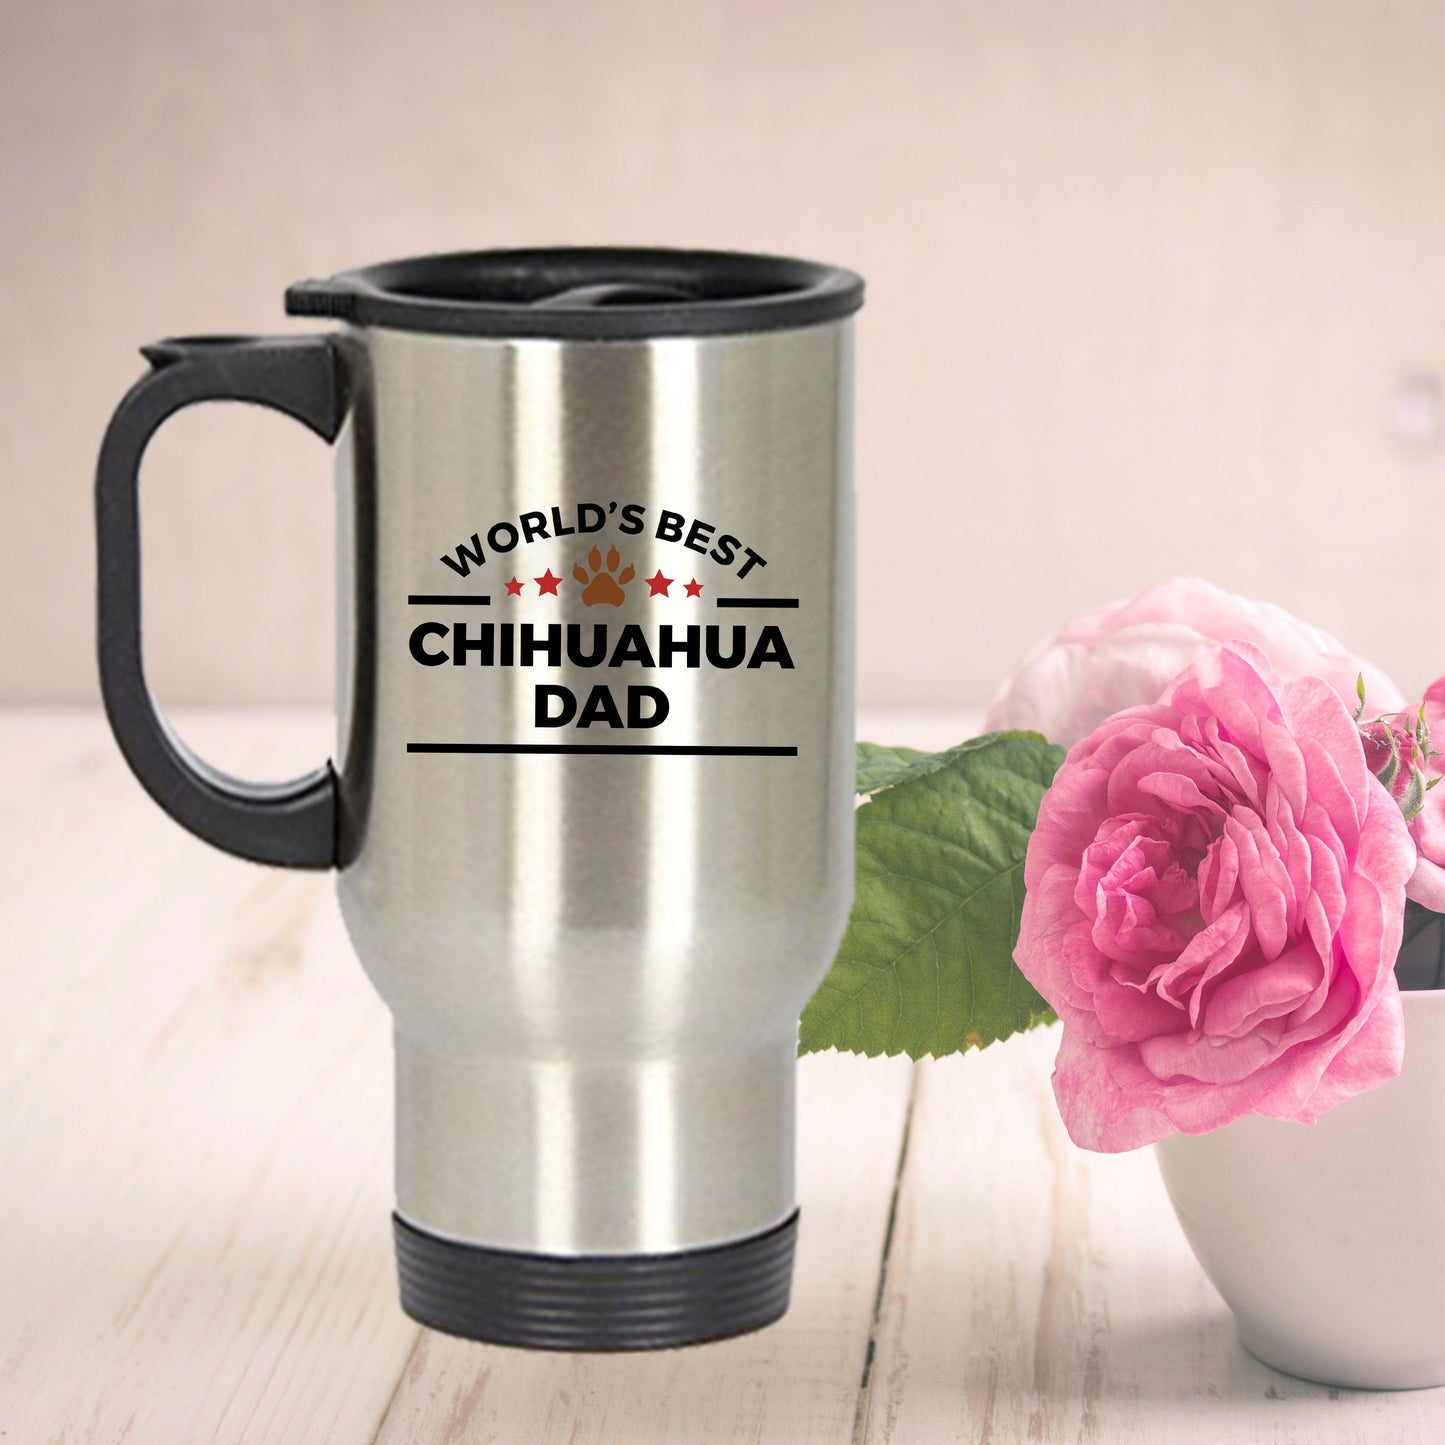 Chihuahua Dog Dad Travel Coffee Mug